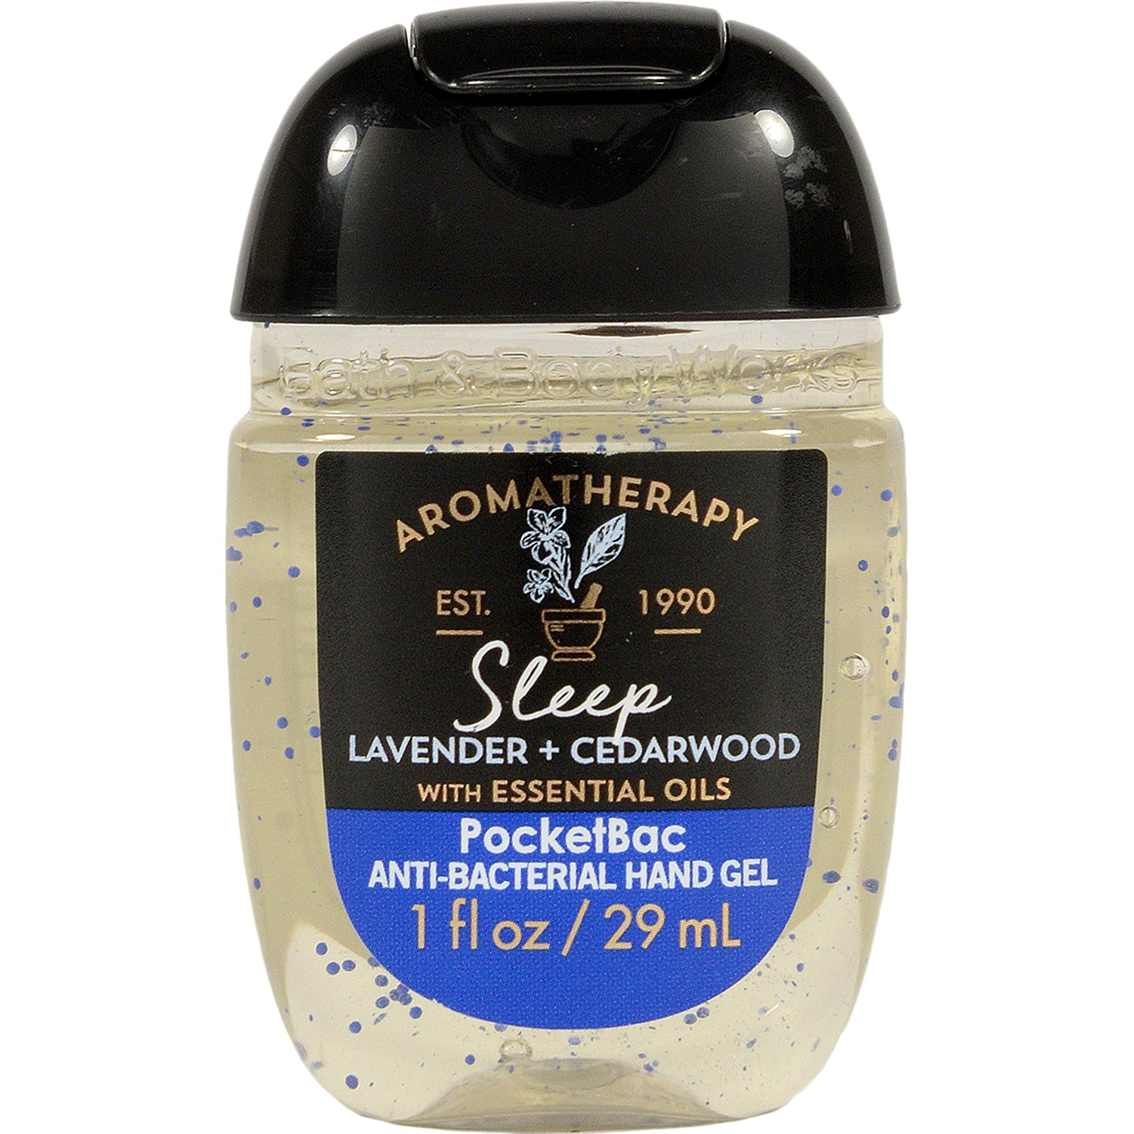 Body lotion bath works sleep relief stress aromatherapy cedarwood lavender eucalyptus spearmint shopmyexchange